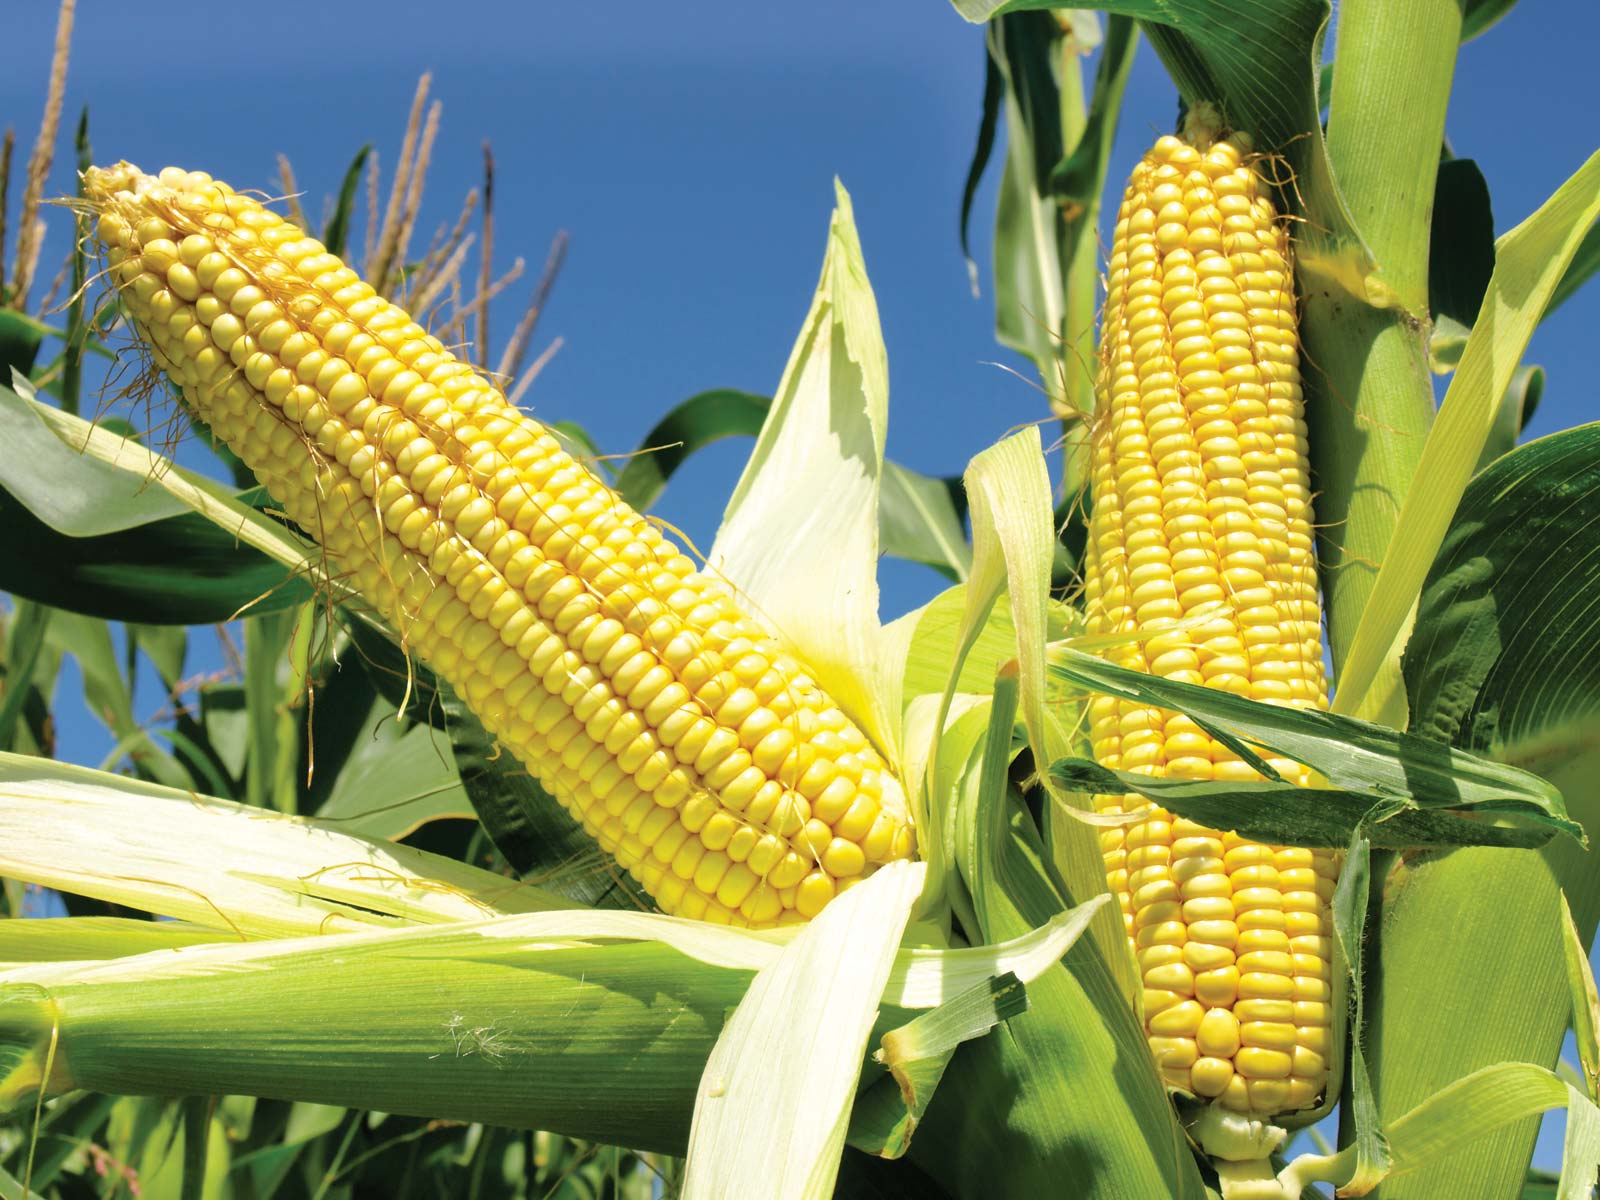 zimbabwe maize stock dwindle